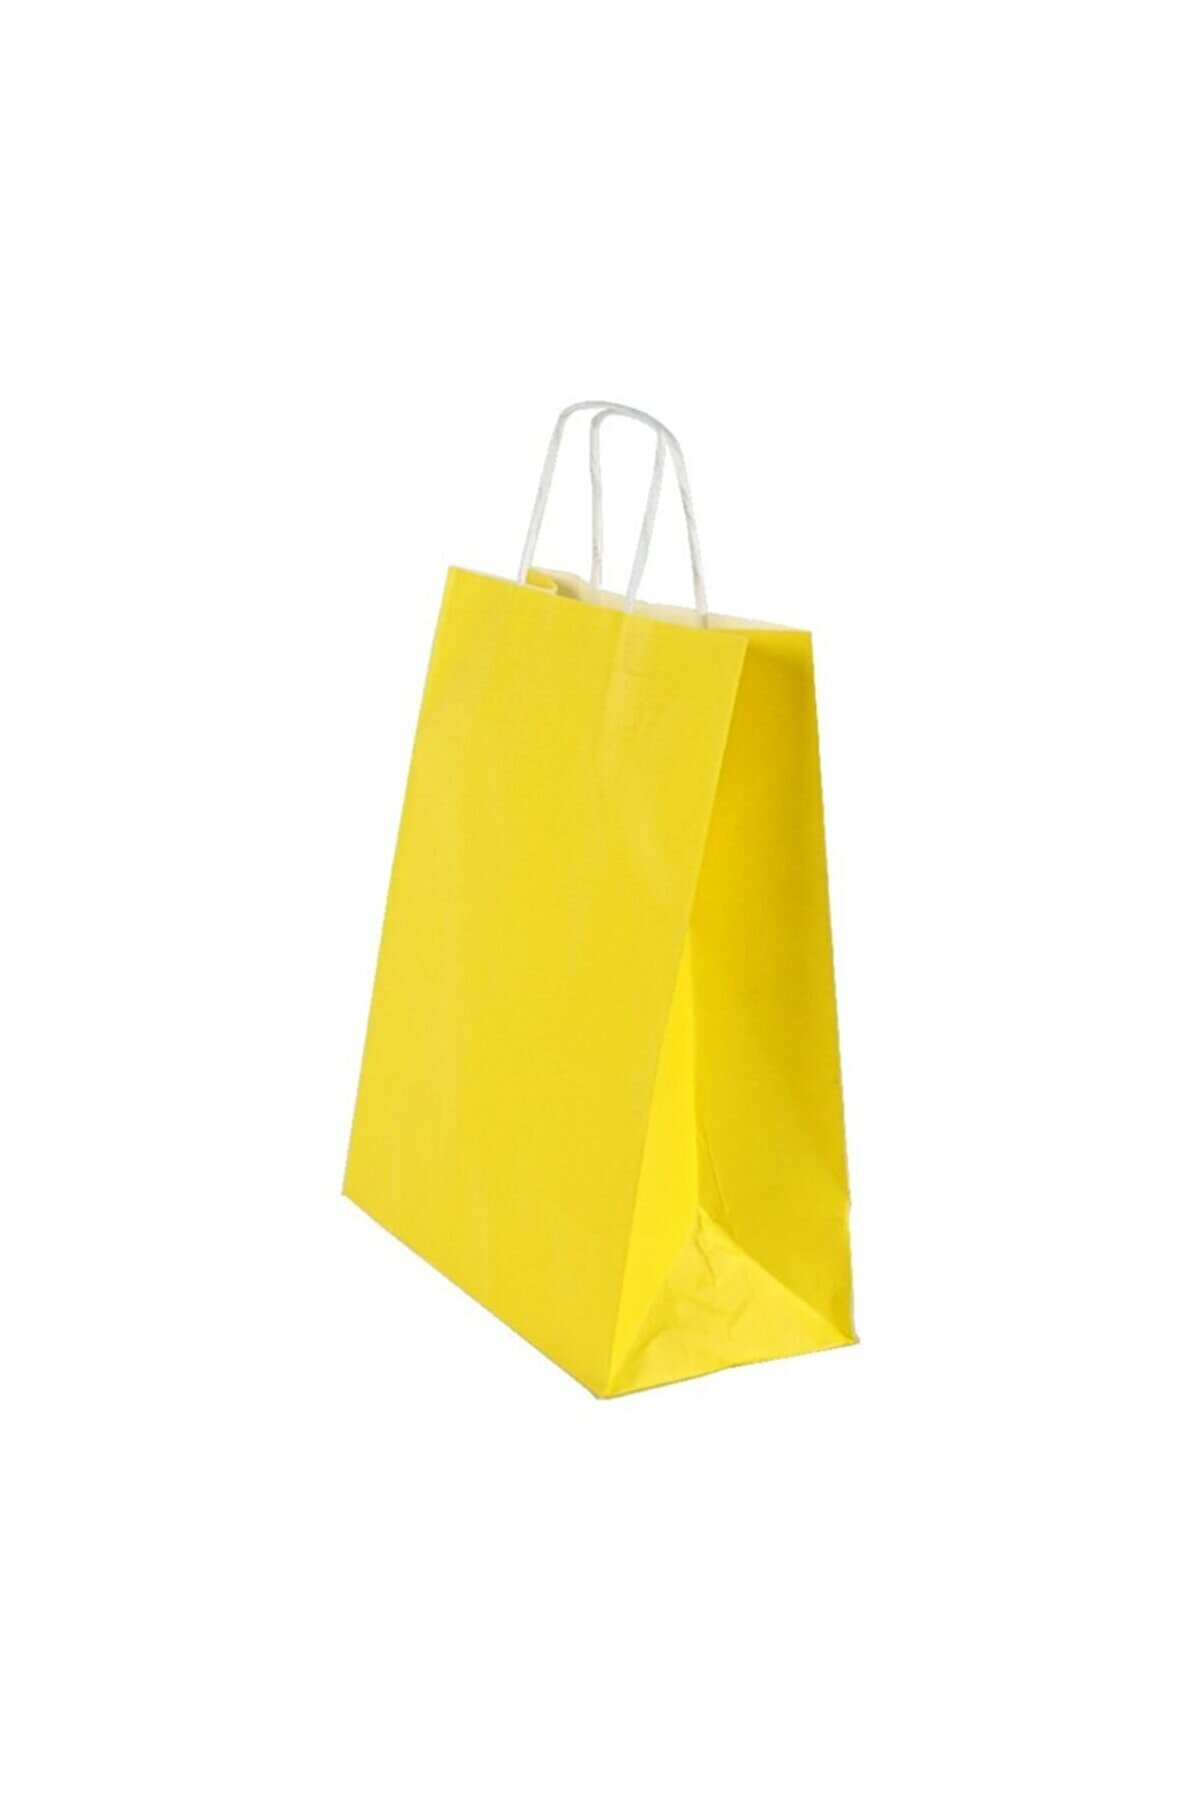 Kraft Sarı Çanta 25x12x31 ( 25 Adet ) ( Kağıt Poşet Çanta )